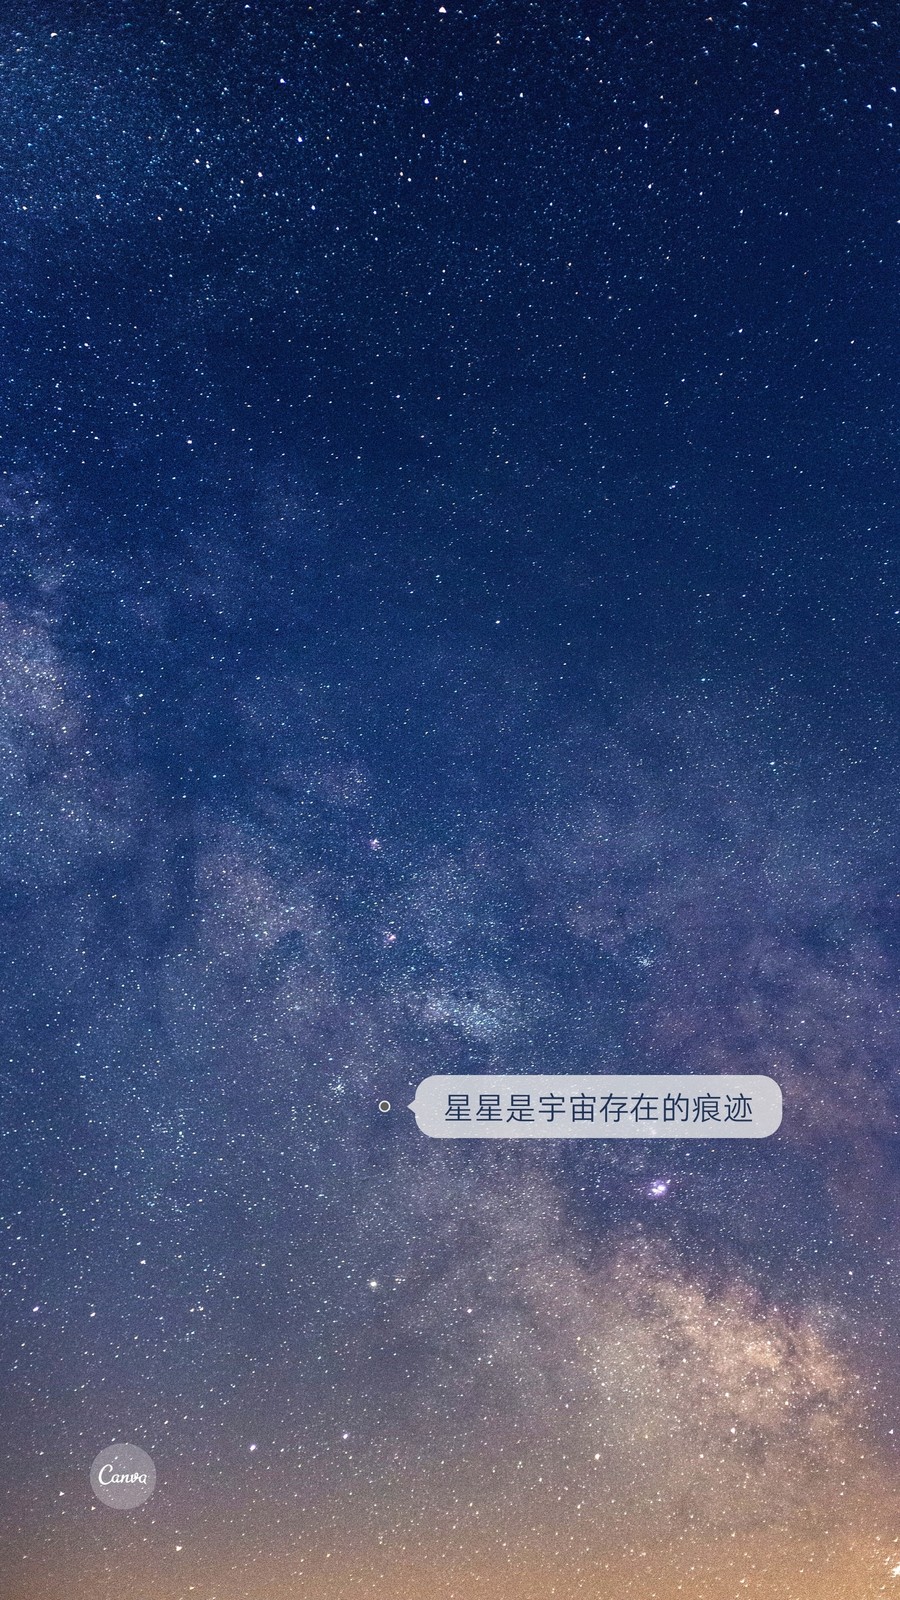 蓝黄色星空星星宇宙nasa火星月亮繁星创意热点分享中文手机壁纸星星是宇宙存在的痕迹 模板 Canva可画